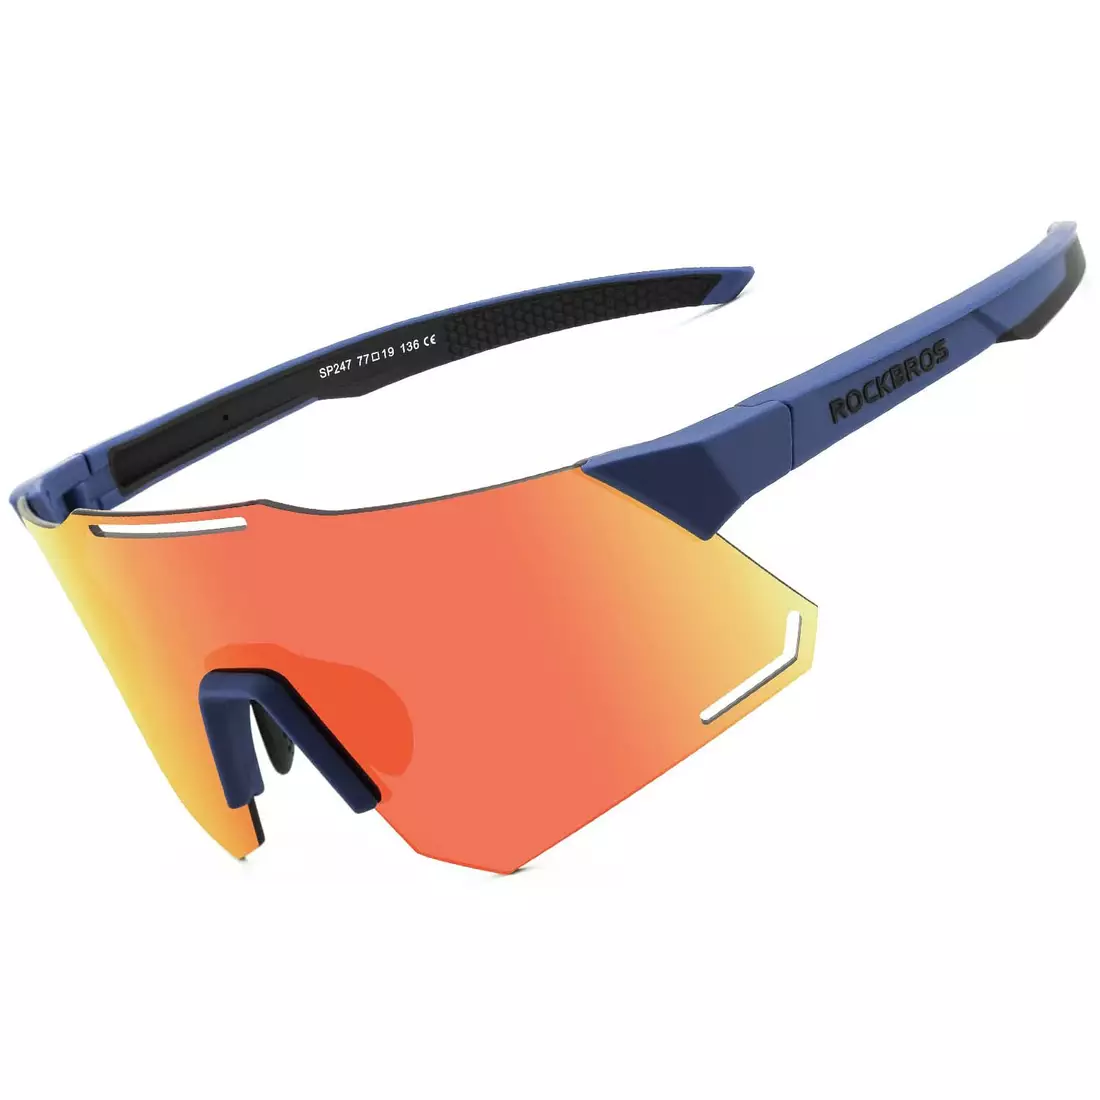 Rockbros 14110001001 Fahrrad / Sportbrille mit polarisiertem blau